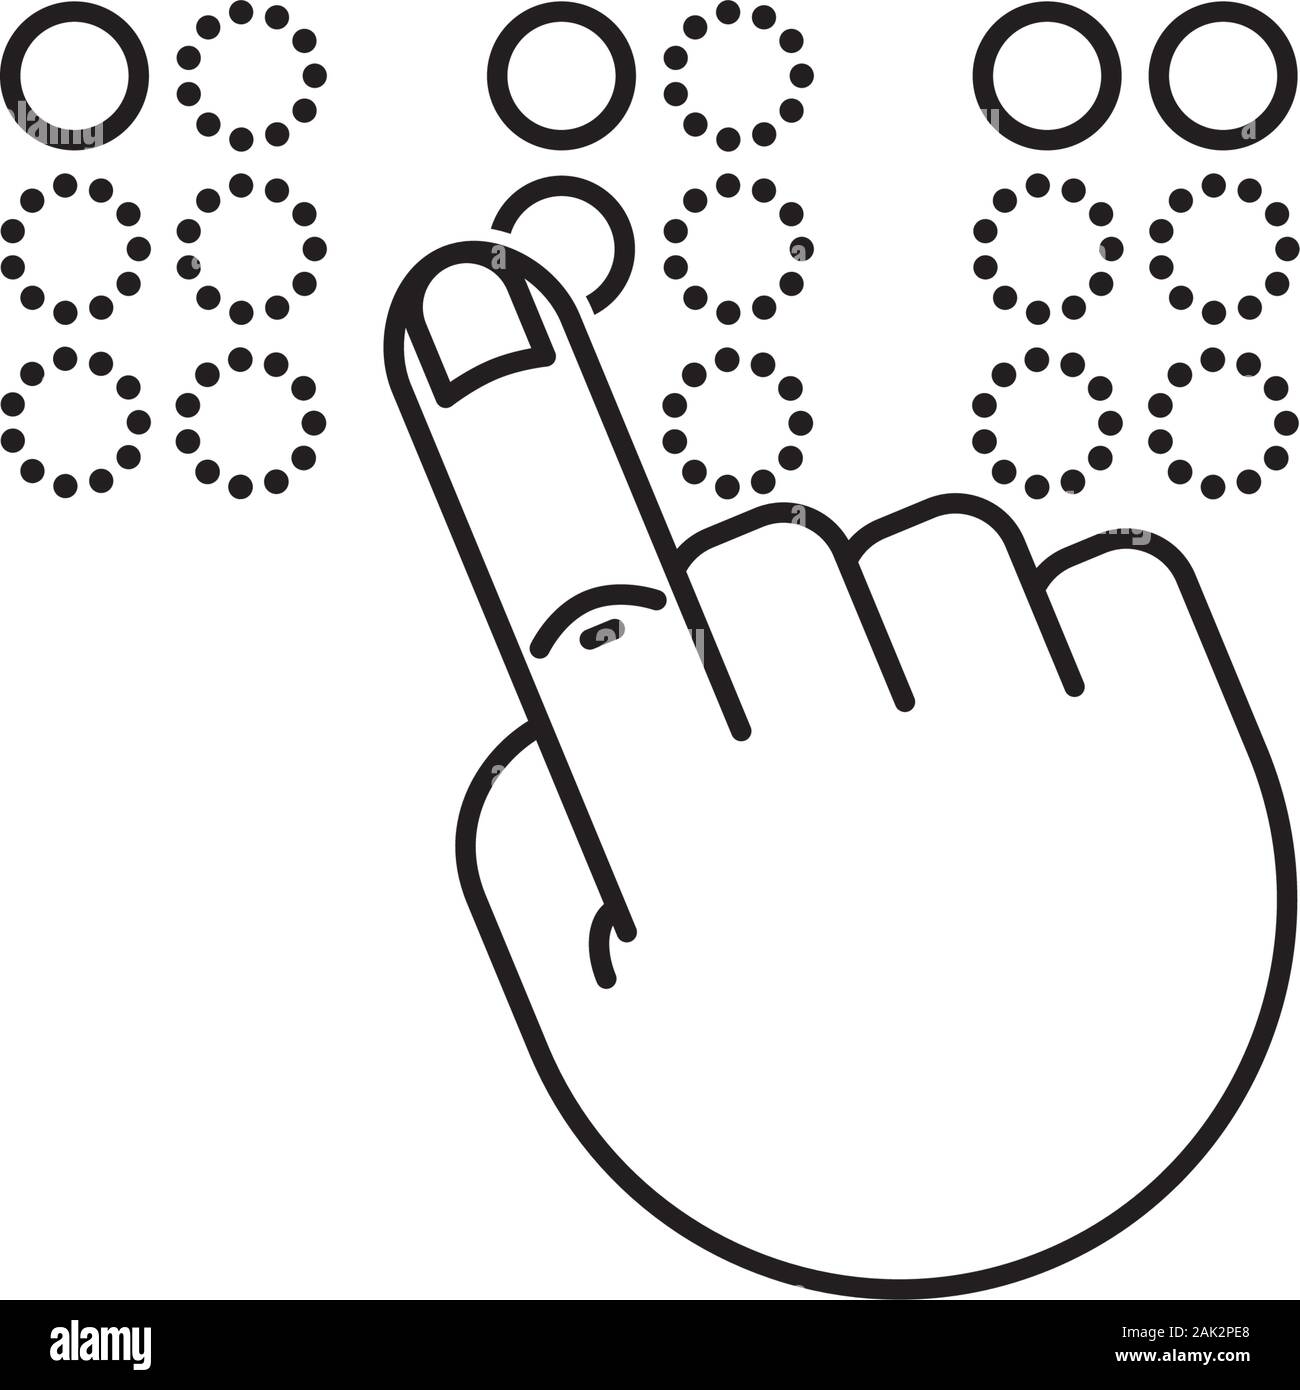 Lettura Braille icona. Delineare il simbolo di vettore di mano toccando alfabeto braille lettere ABC. Illustrazione Vettoriale